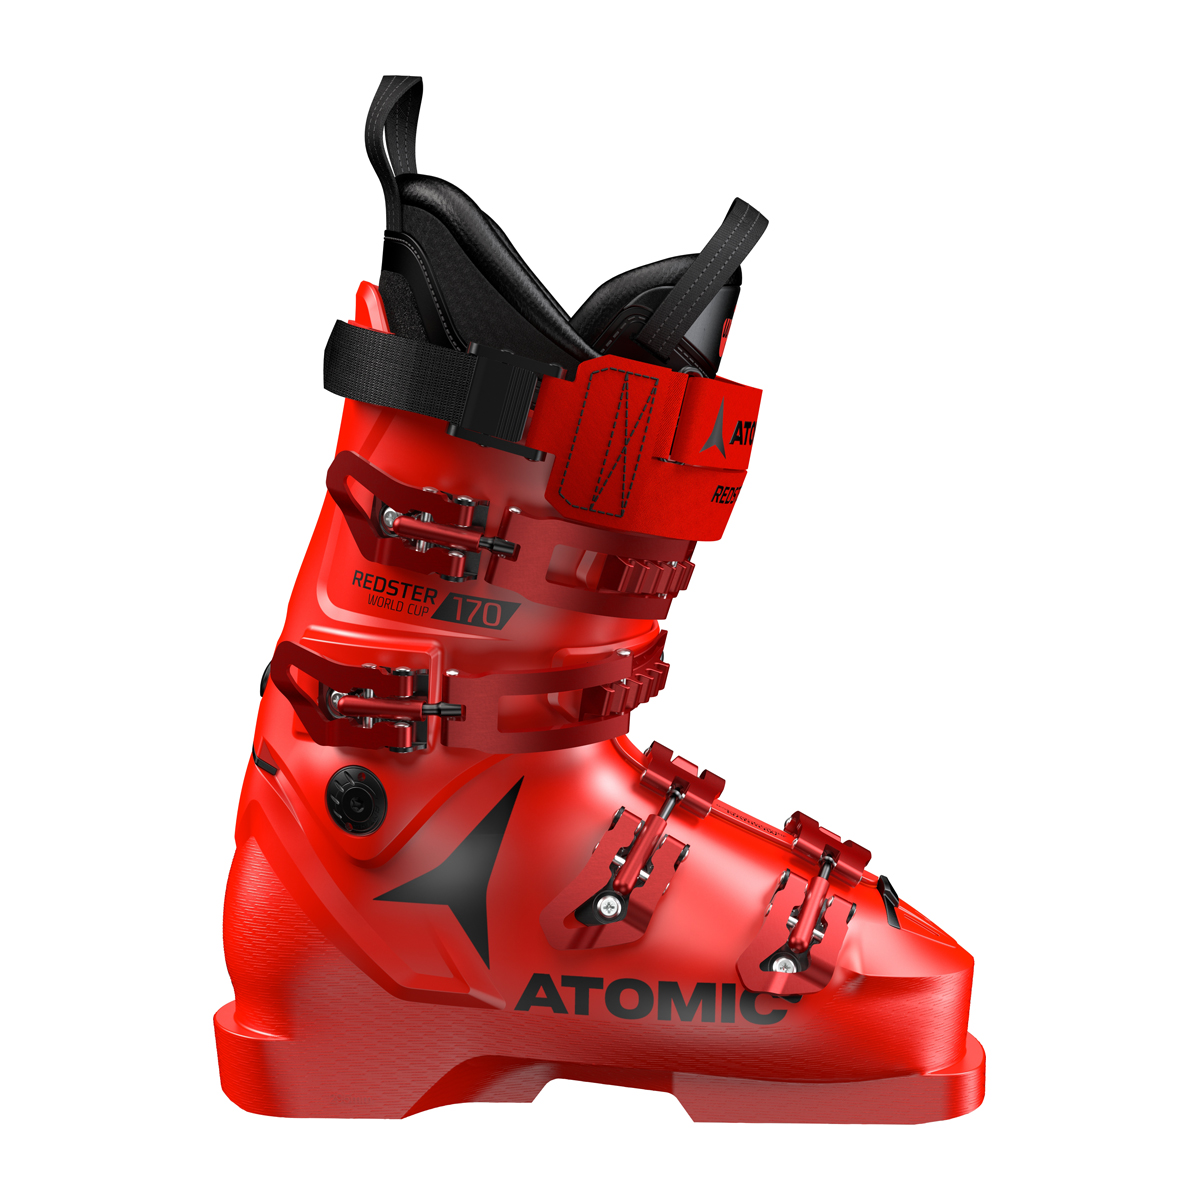 Ботинки горнолыжные Atomic 19-20 Redster WC 170 Black/Red как отказаться от пластика руководство по спасению мира